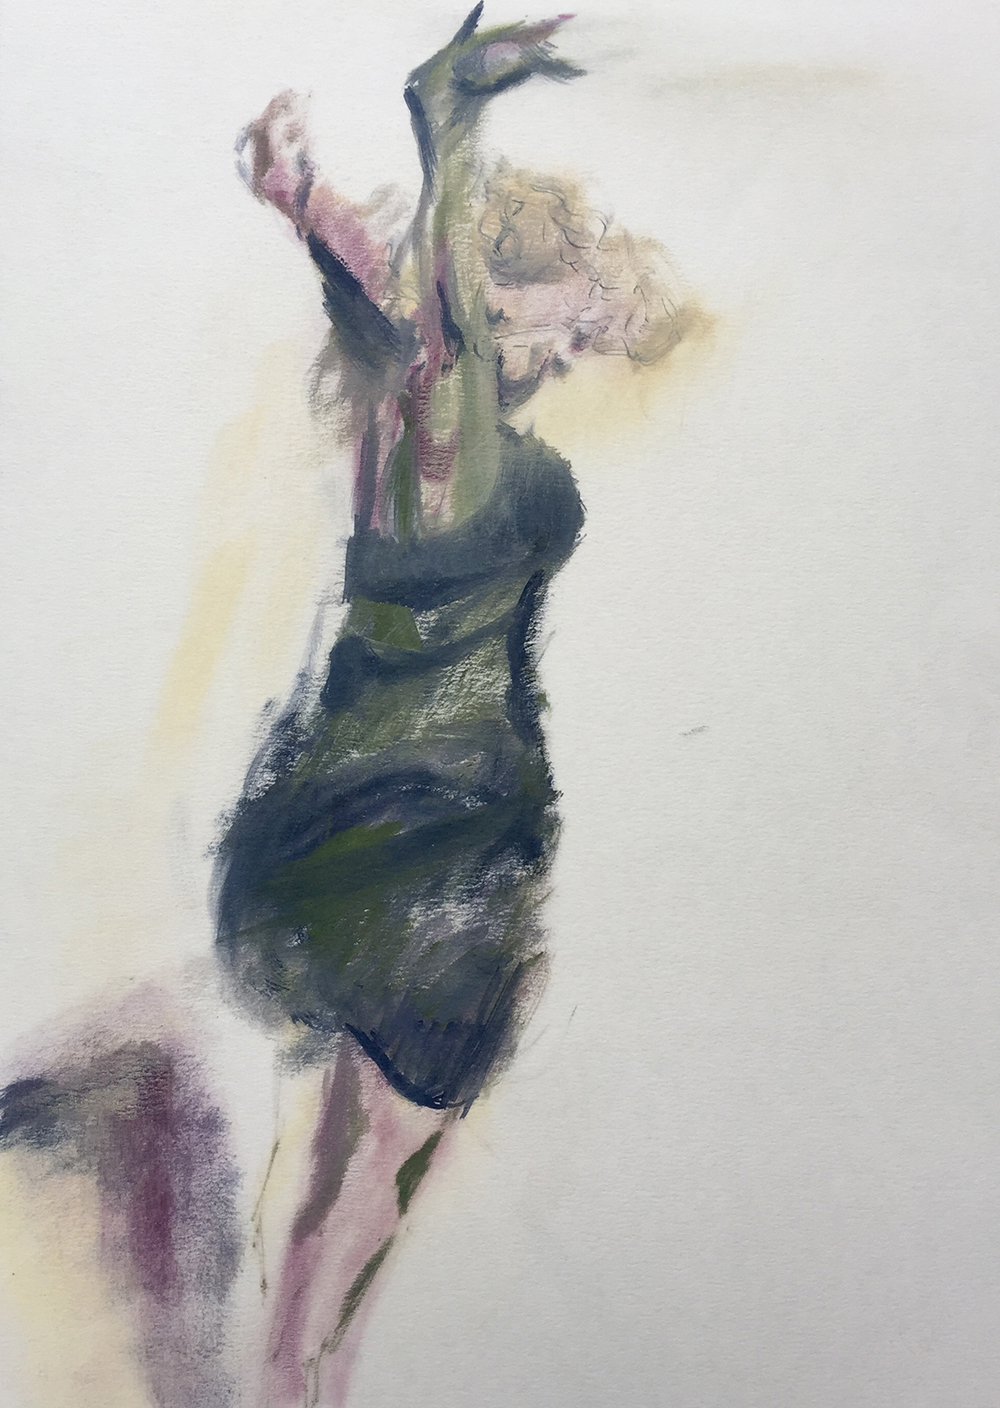 Bild mit Pastellkreide gemalt von Nicole Sacher mit einer Frau die einen Tanz darstellt. Schwungvolle Bewegungen - stiller Tanz.